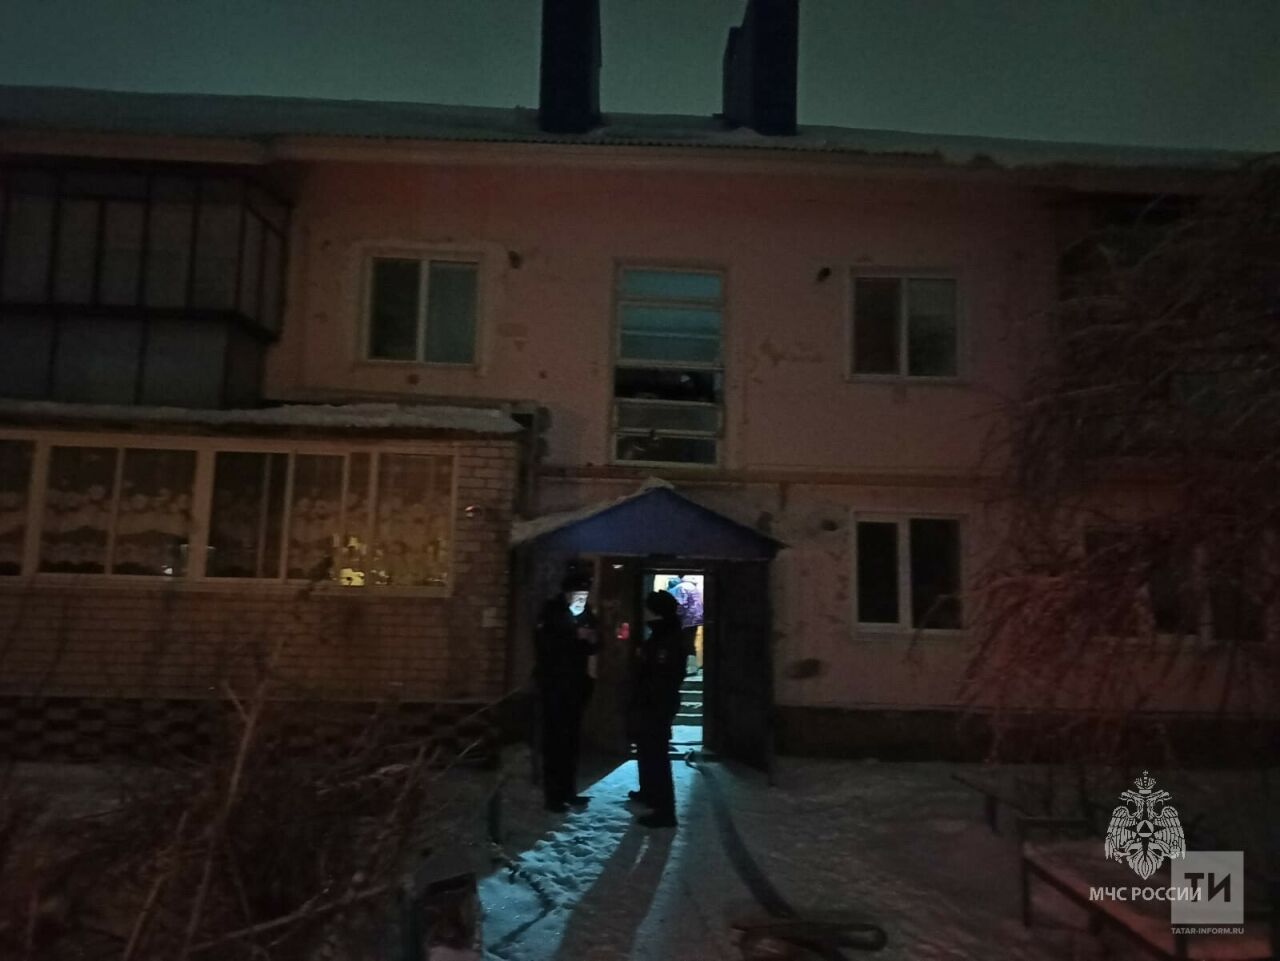 При ночном пожаре в Татарстане погибли мужчина и женщина